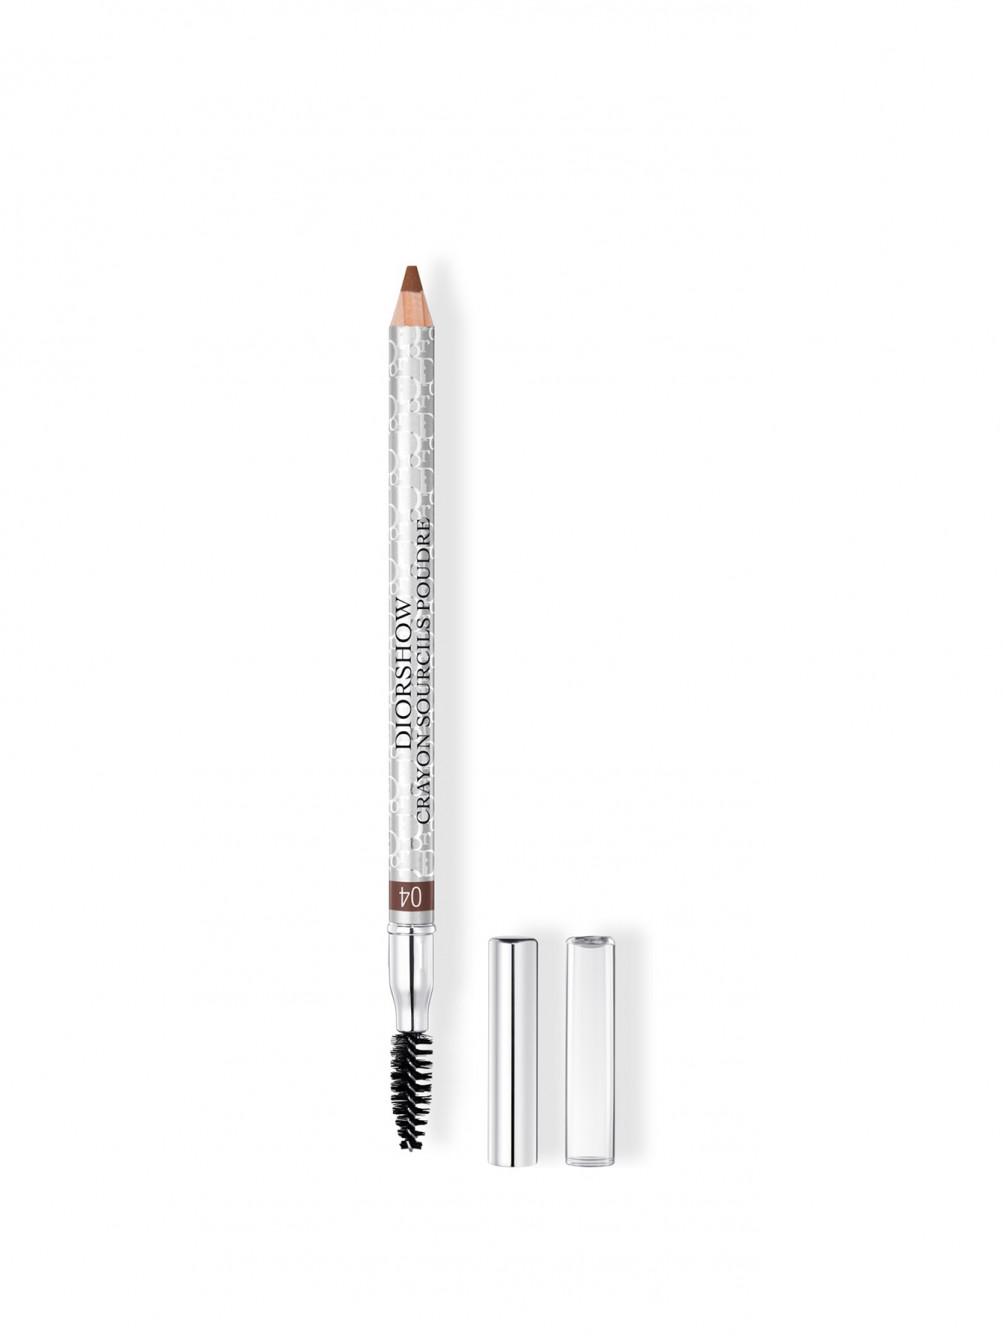 Diorshow Crayon Sourcils Poudre Водостойкий карандаш для бровей с точилкой, 04 Золотисто-Каштановый - Общий вид